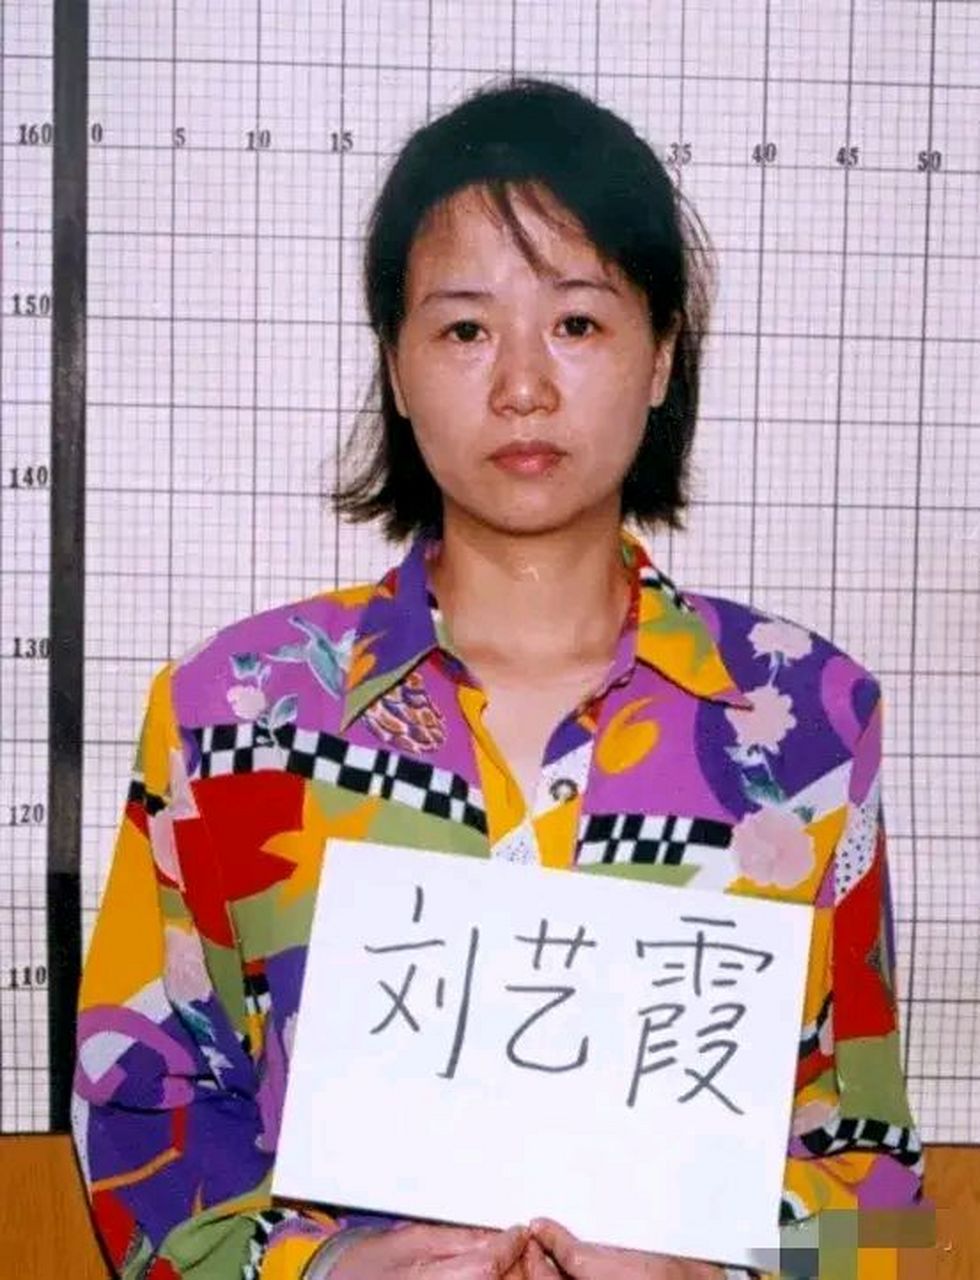 2000年,公职人员刘艺霞与丈夫李少洋,双双被执行死刑,震惊了社会!